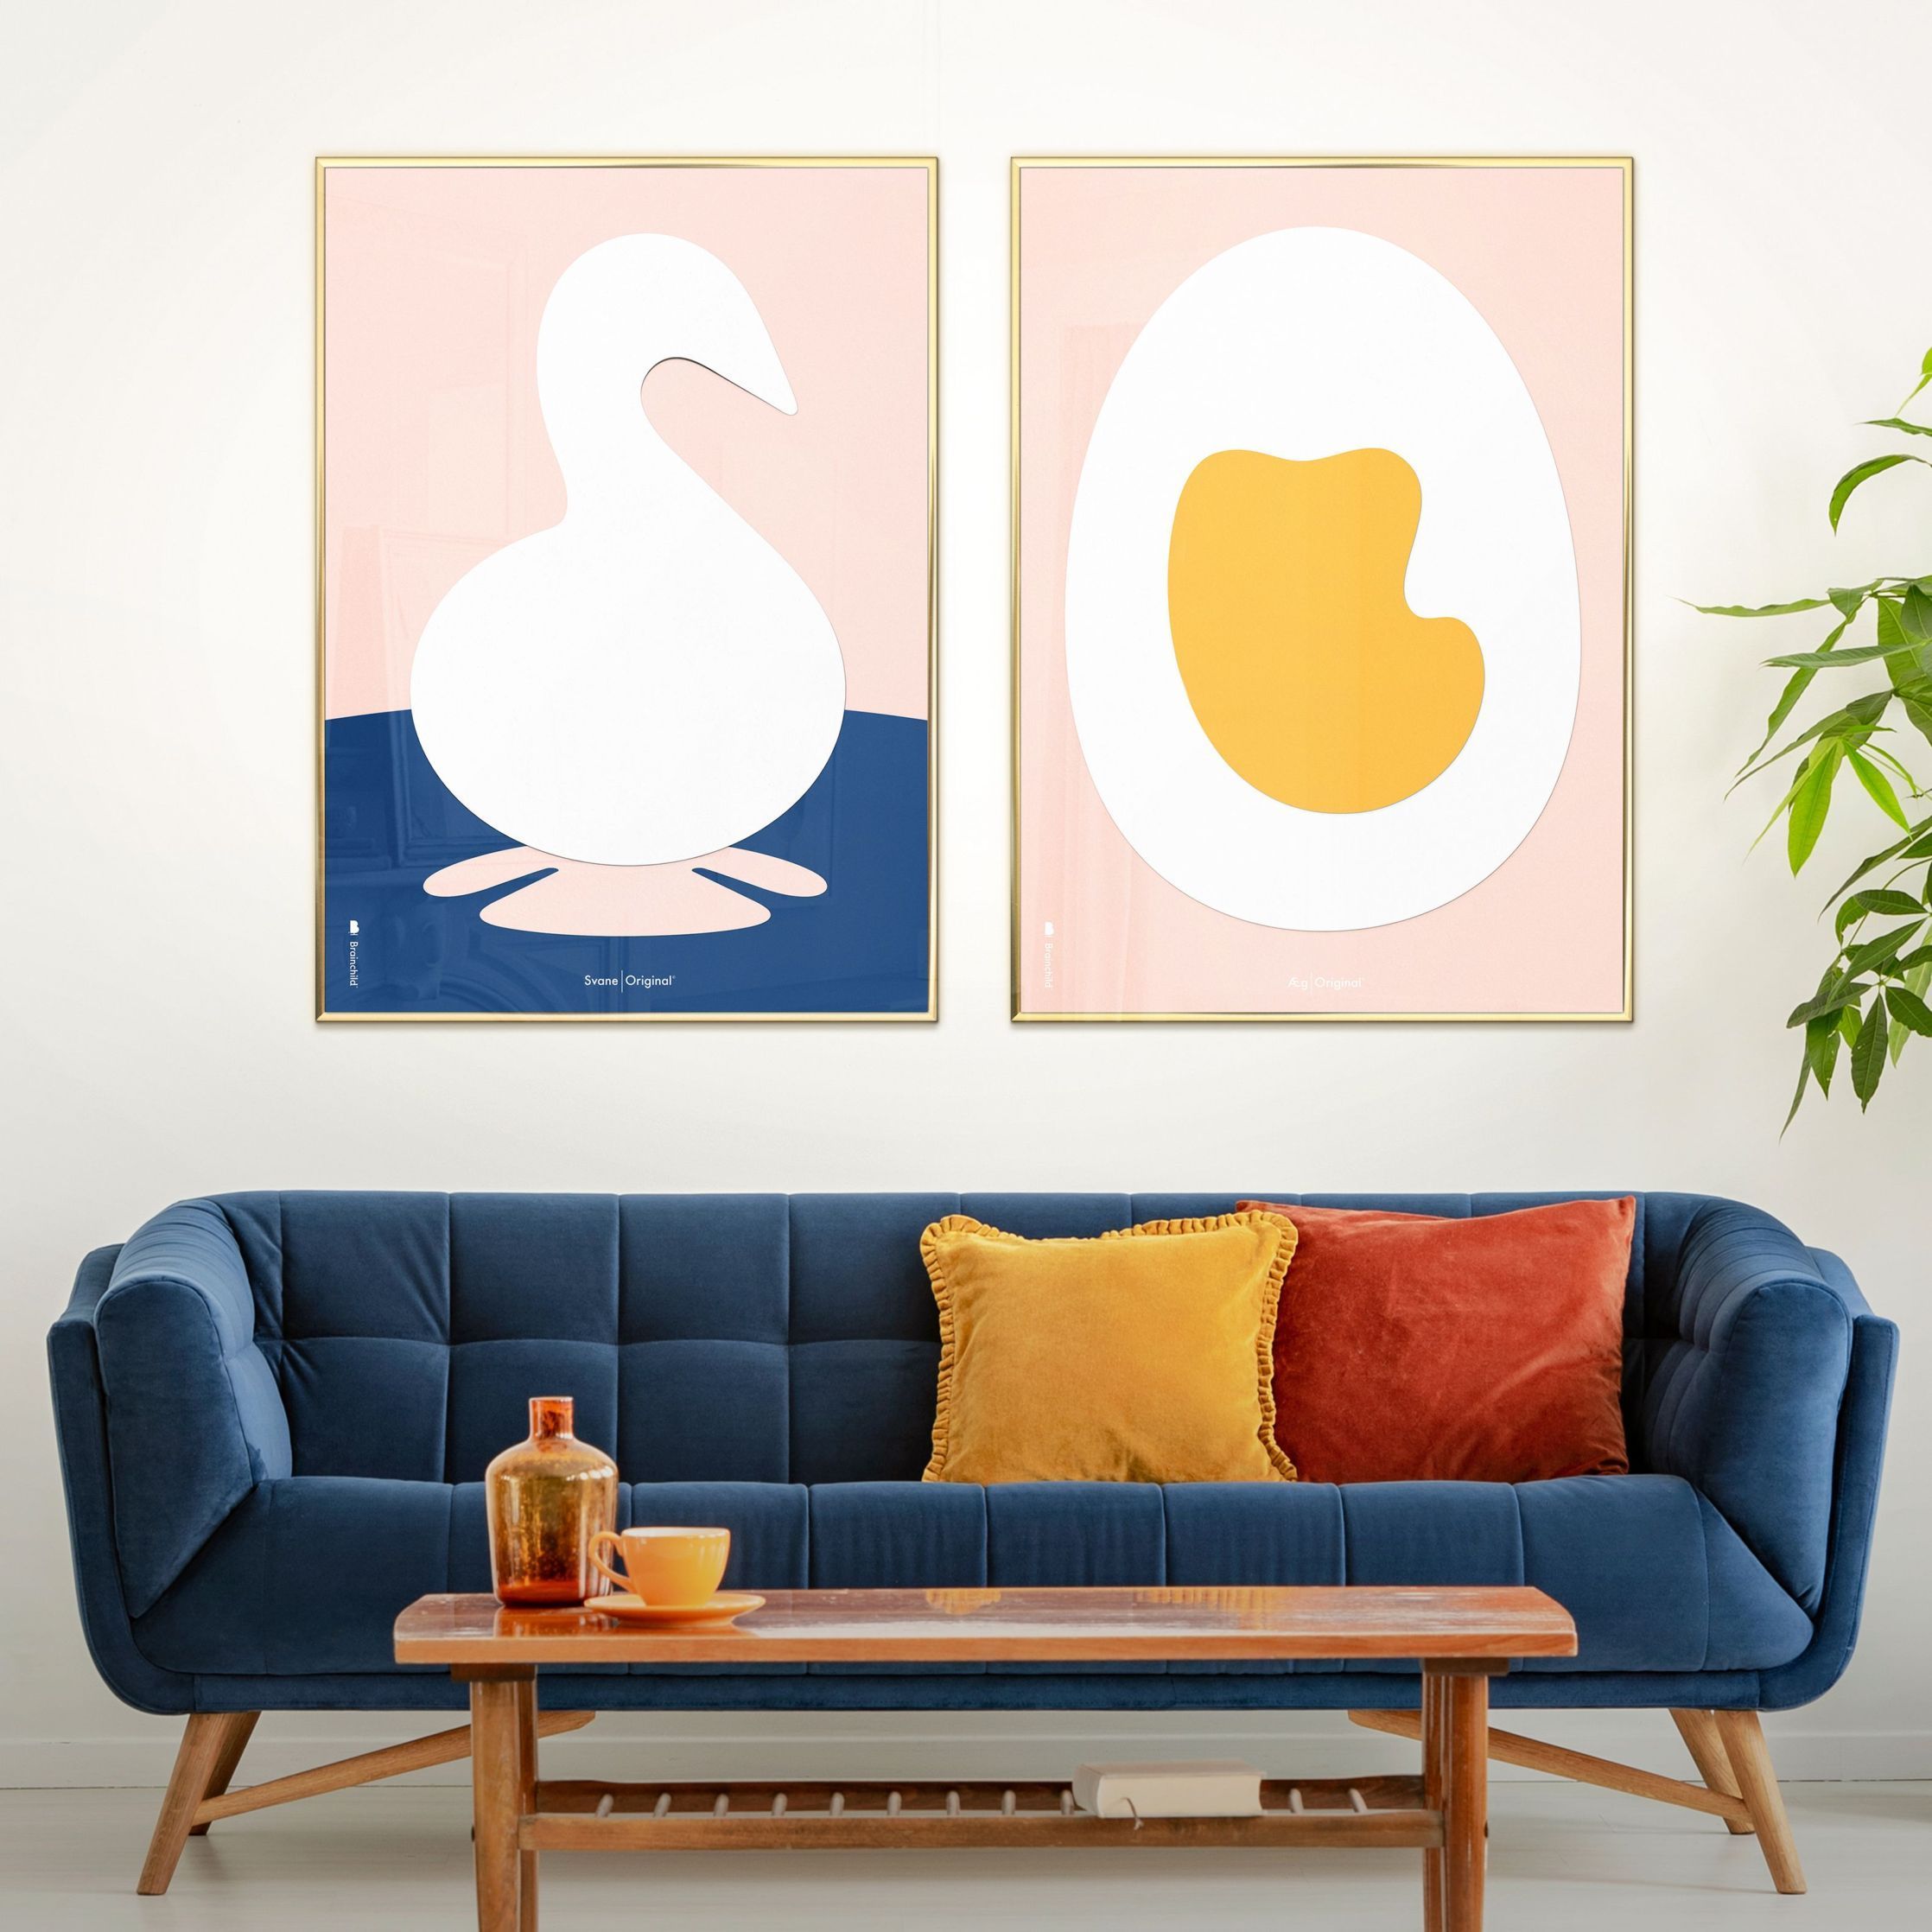 Plakát s labuťovou sponou s labutí, rám vyrobený z tmavého dřeva 70x100 cm, růžové pozadí